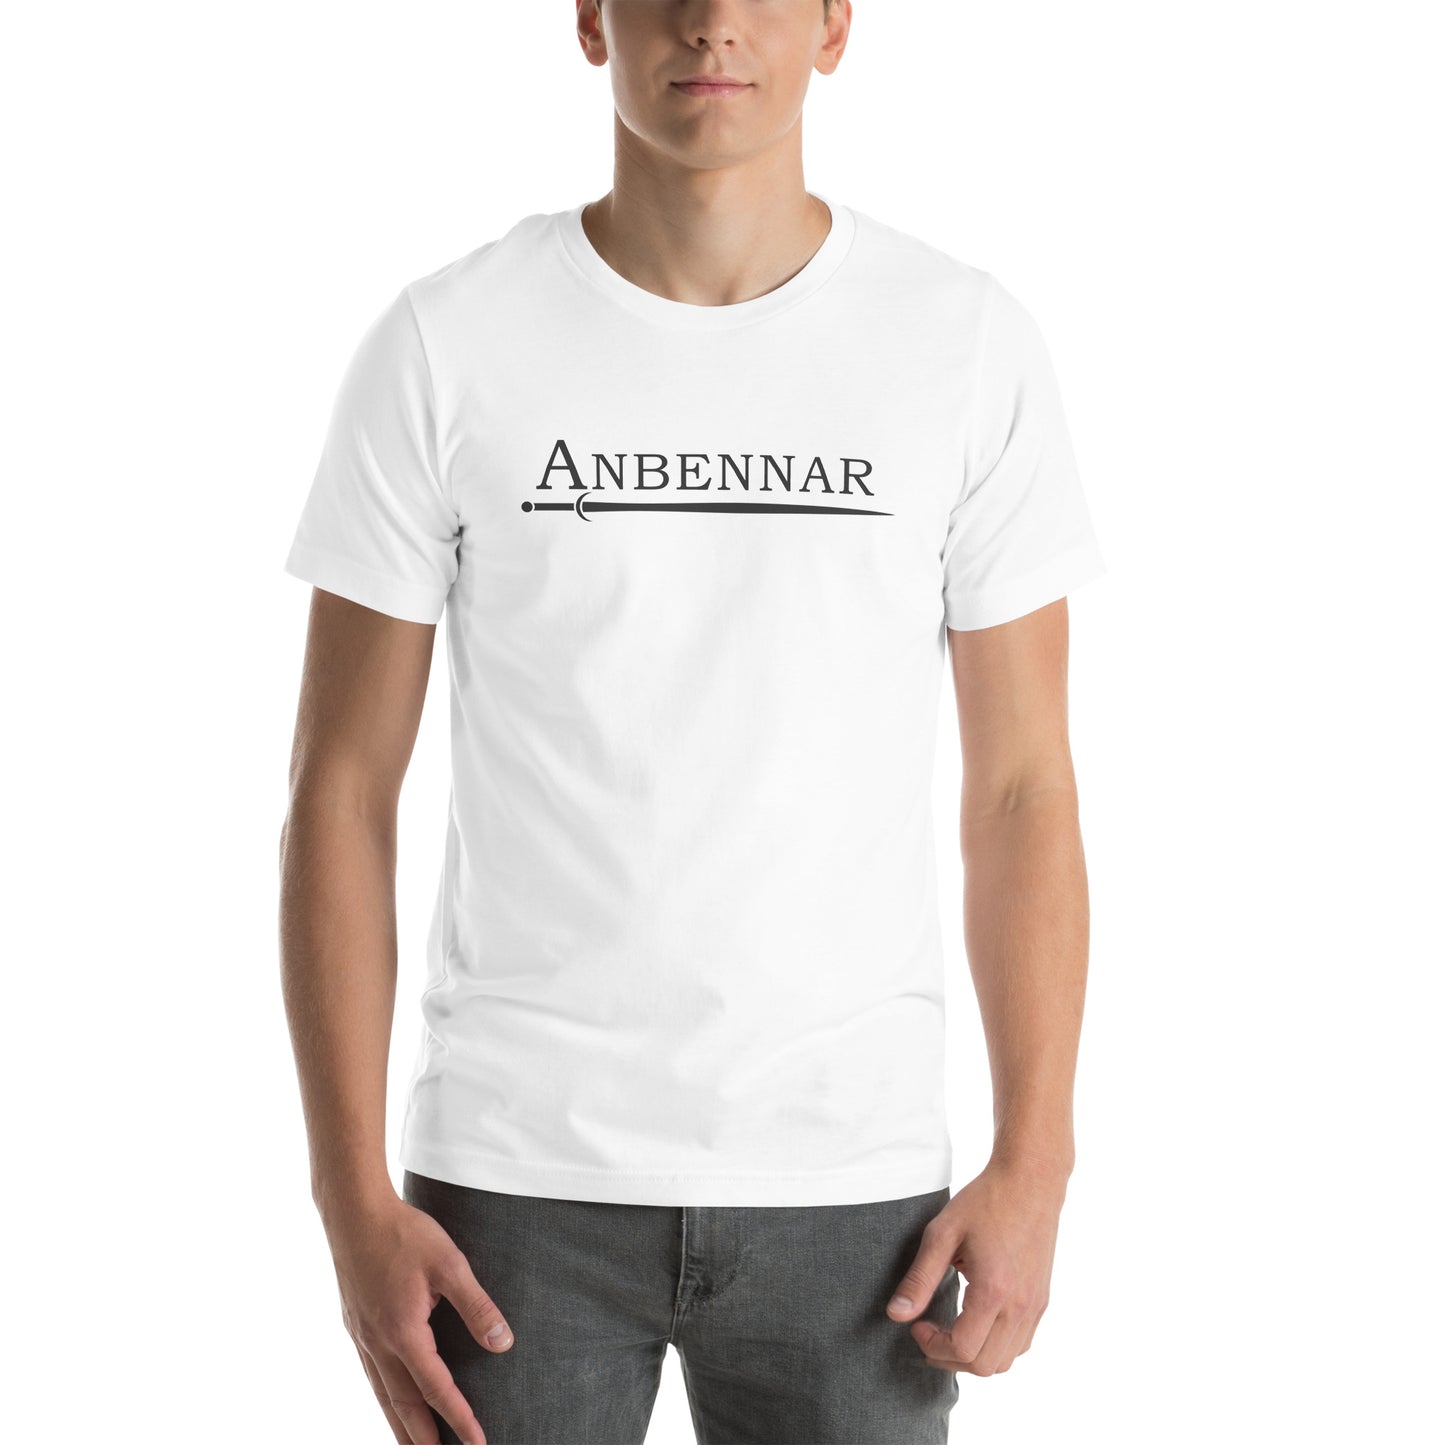 Anbennar Text Logo, Black Font - Unisex T-shirt